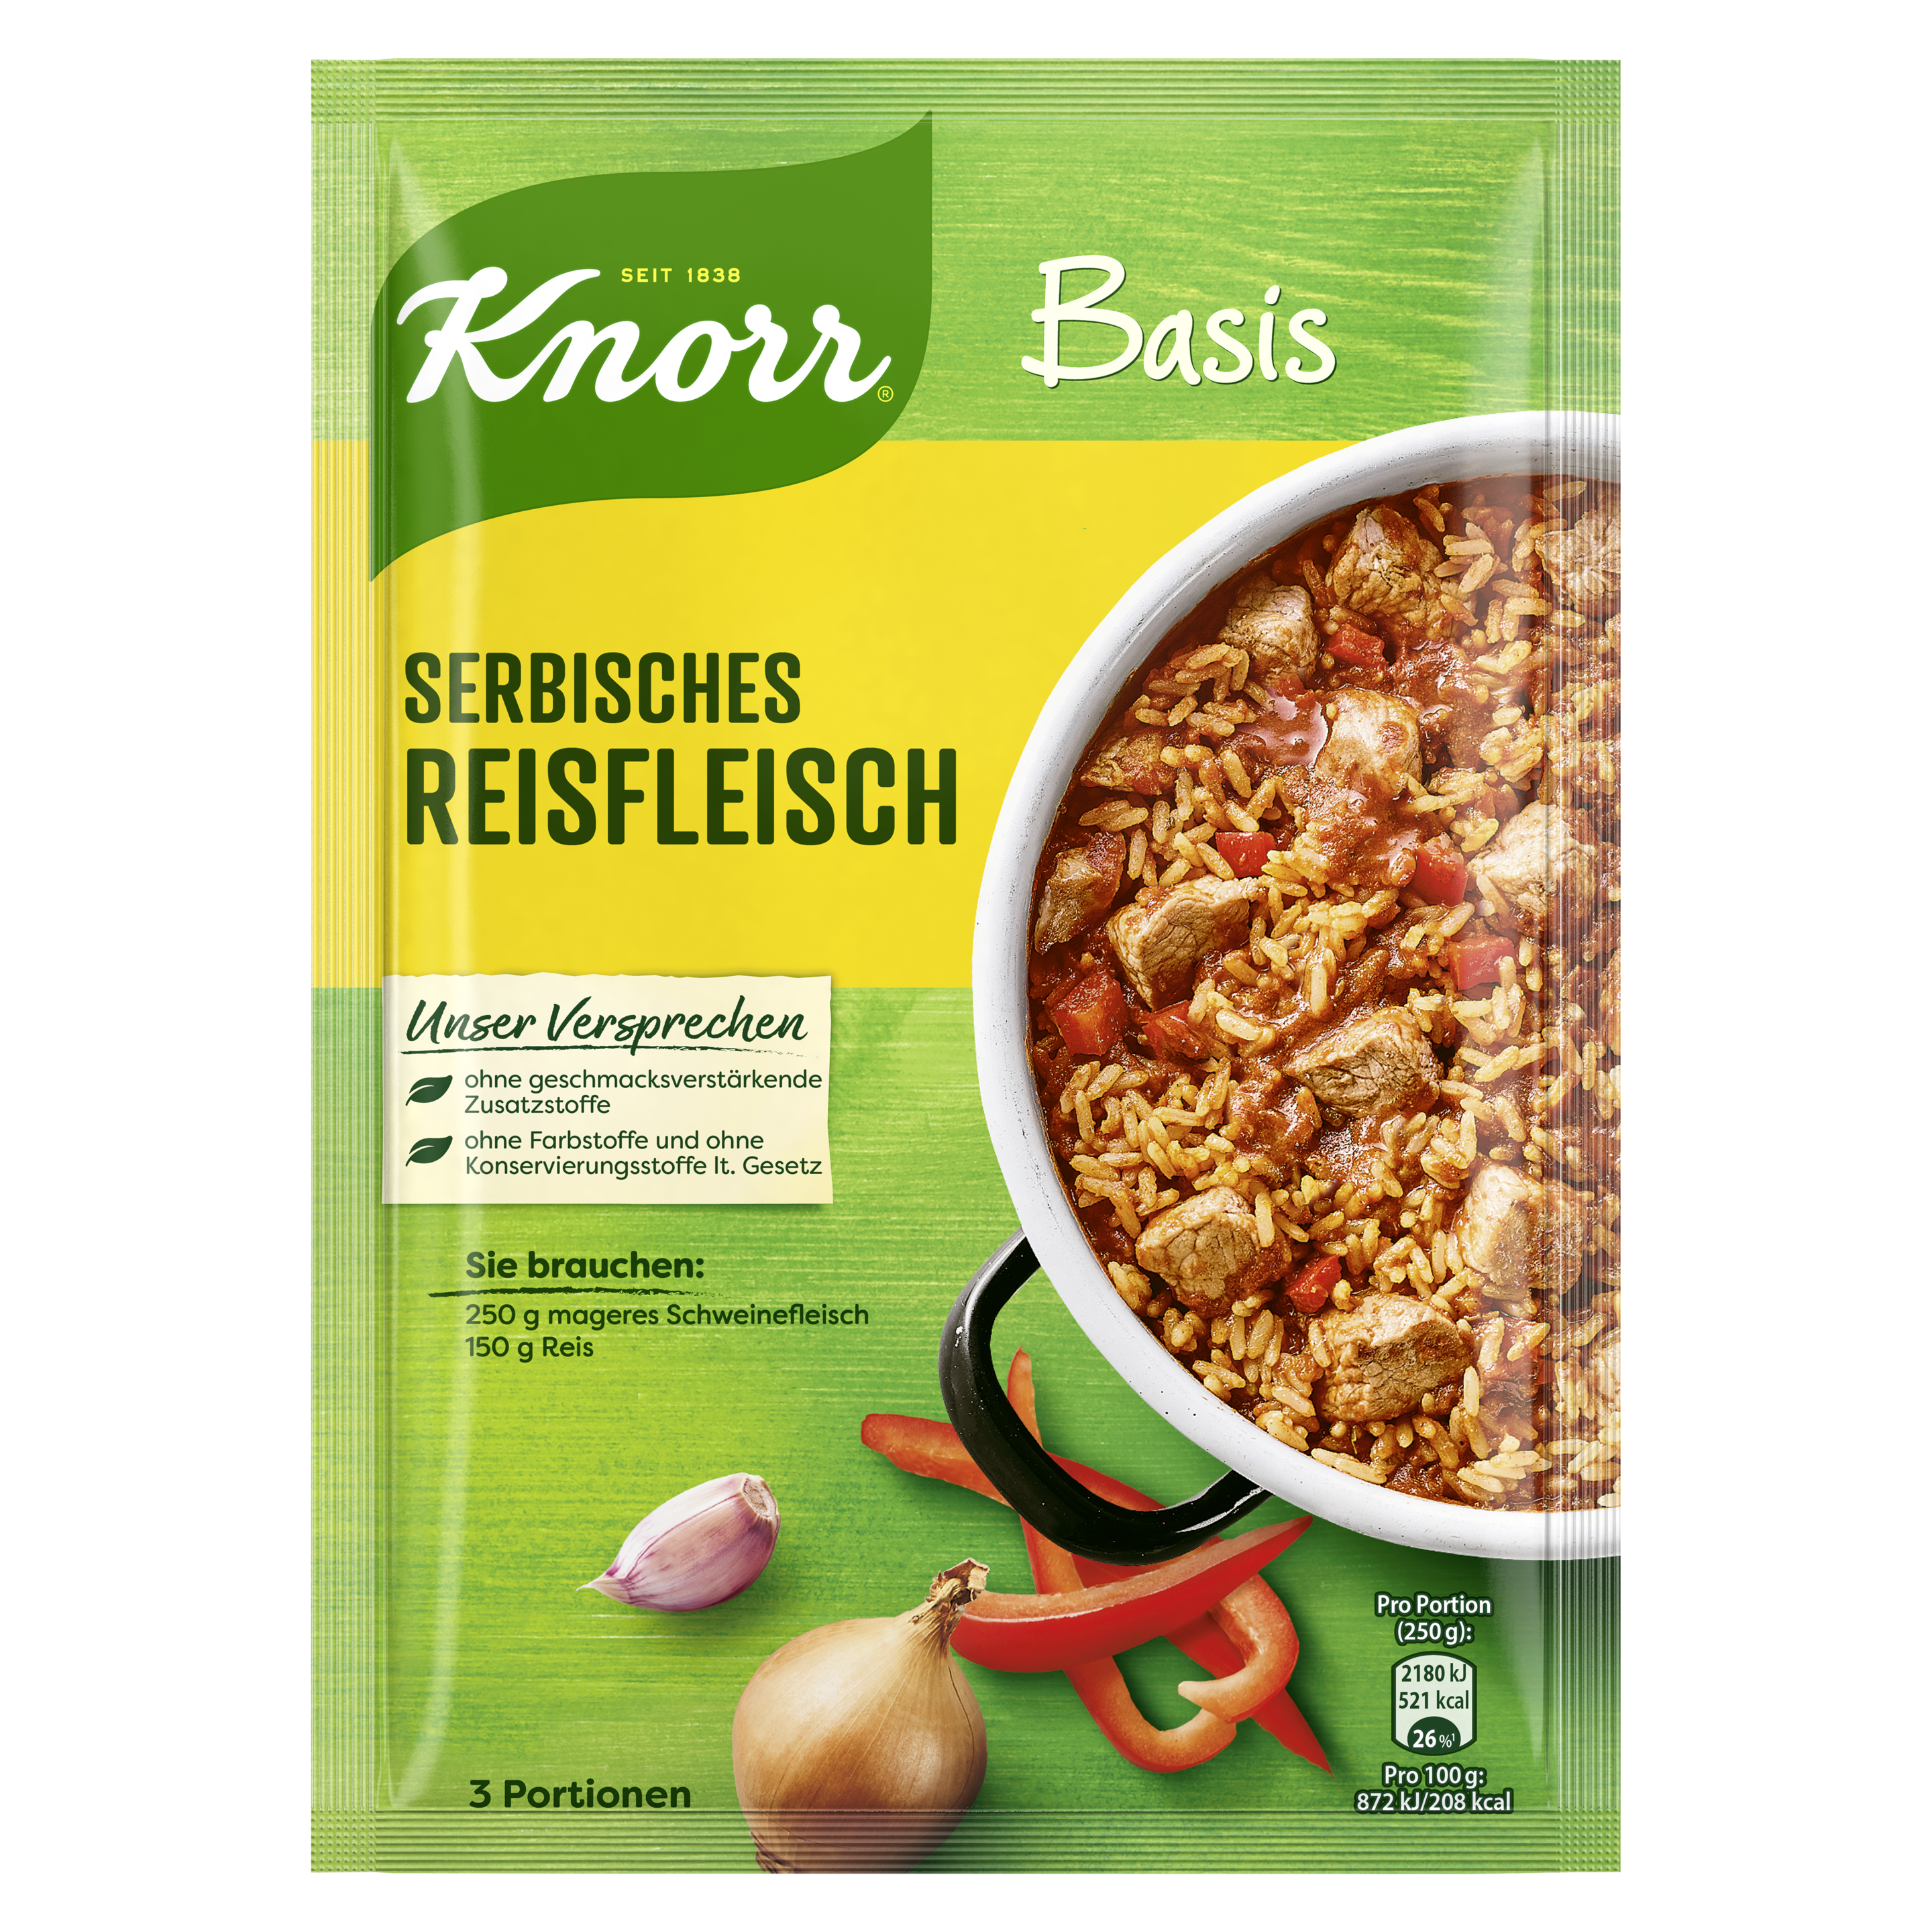 Knorr Basis Serbisches Reisfleisch 3 Portionen